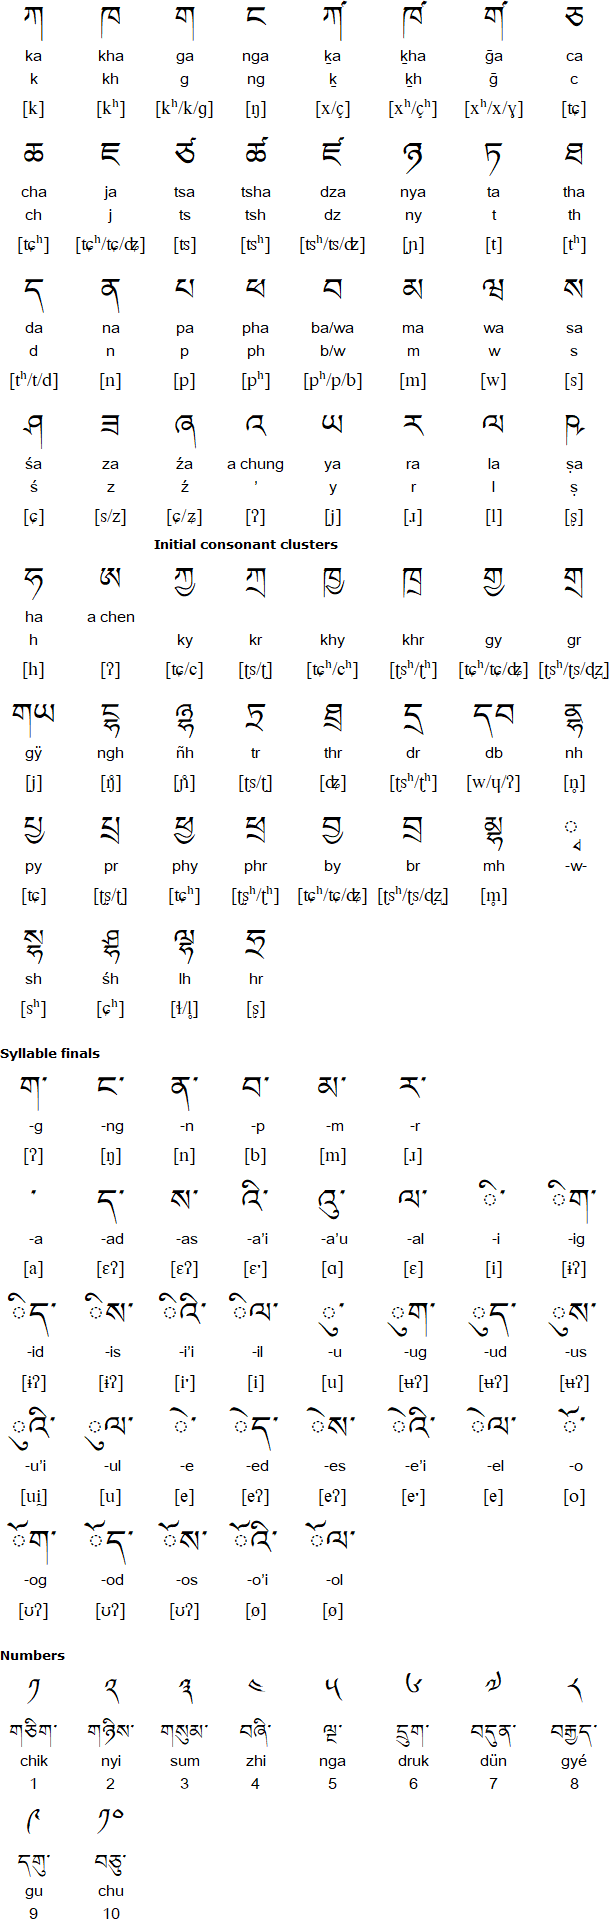 Khams Tibetan alphabet